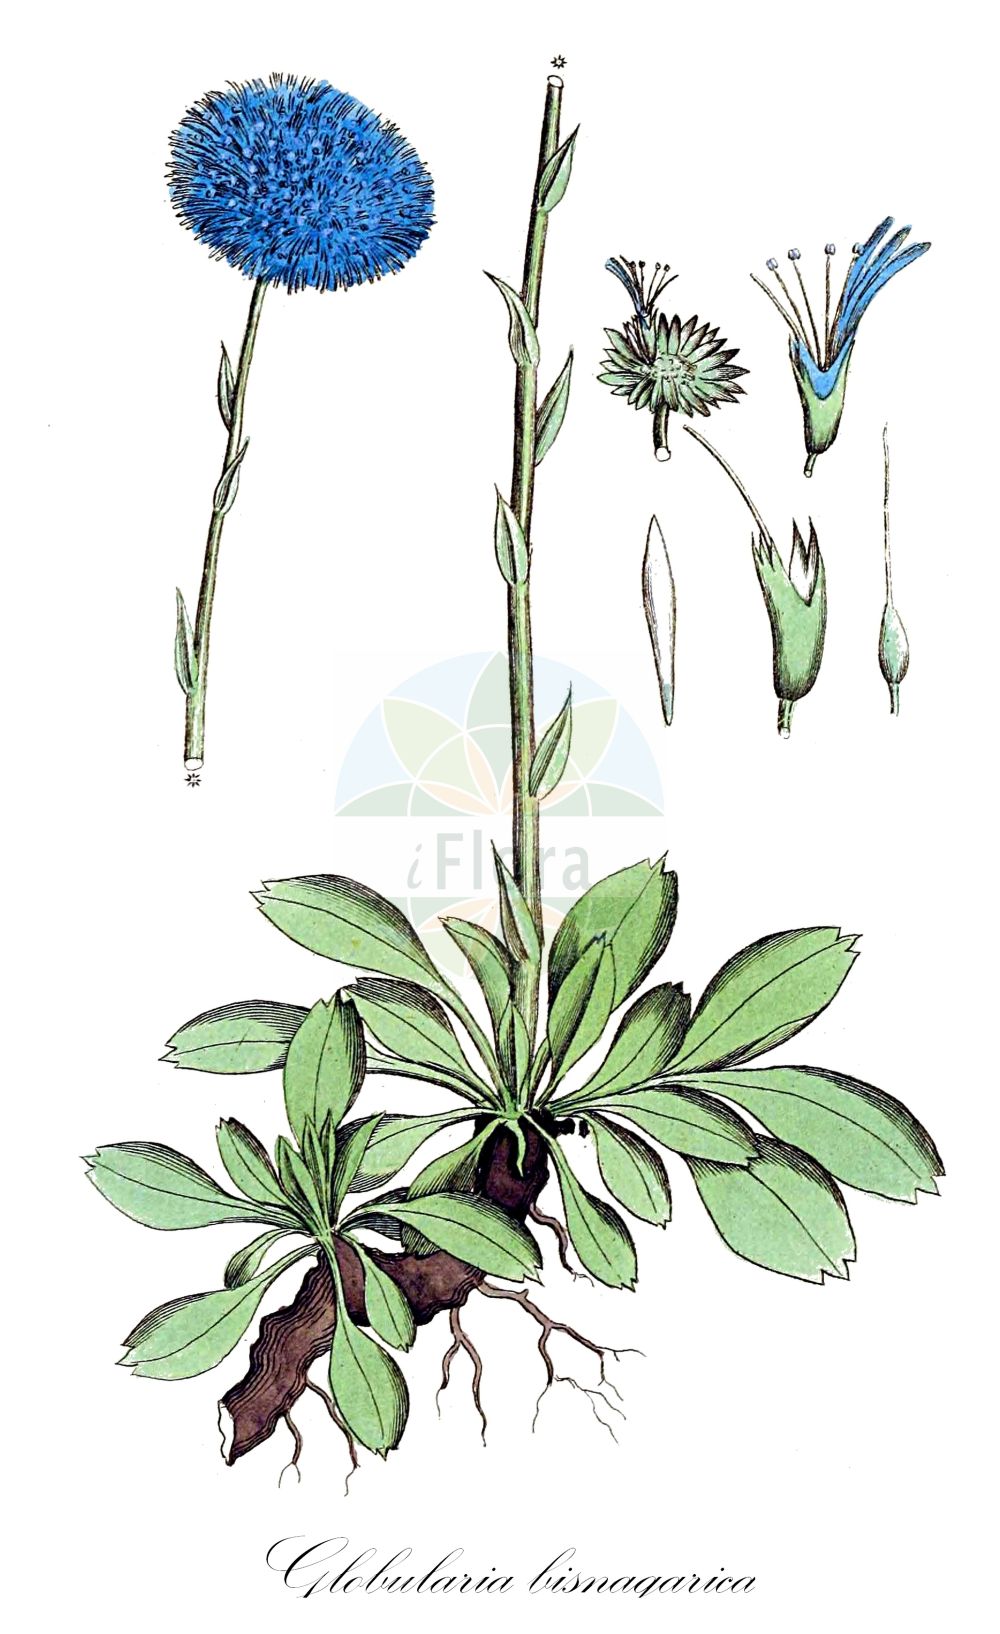 Historische Abbildung von Globularia bisnagarica (Gewöhnliche Kugelblume - Blue Daisy). Das Bild zeigt Blatt, Bluete, Frucht und Same. ---- Historical Drawing of Globularia bisnagarica (Gewöhnliche Kugelblume - Blue Daisy). The image is showing leaf, flower, fruit and seed.(Globularia bisnagarica,Gewöhnliche Kugelblume,Blue Daisy,Globularia bisnagarica,Globularia elongata,Globularia punctata,Globularia tenella,Globularia willkommii,Gewoehnliche Kugelblume,Hochstaengel-Kugelblume,Blue Daisy,Bone Flower,Common Globularia,Globe Flower,Globularia,Kugelblume,Globularias,Plantaginaceae,Wegerichgewächse,Plantain family,Blatt,Bluete,Frucht,Same,leaf,flower,fruit,seed,Svensk Botanik (Svensk Botanik))